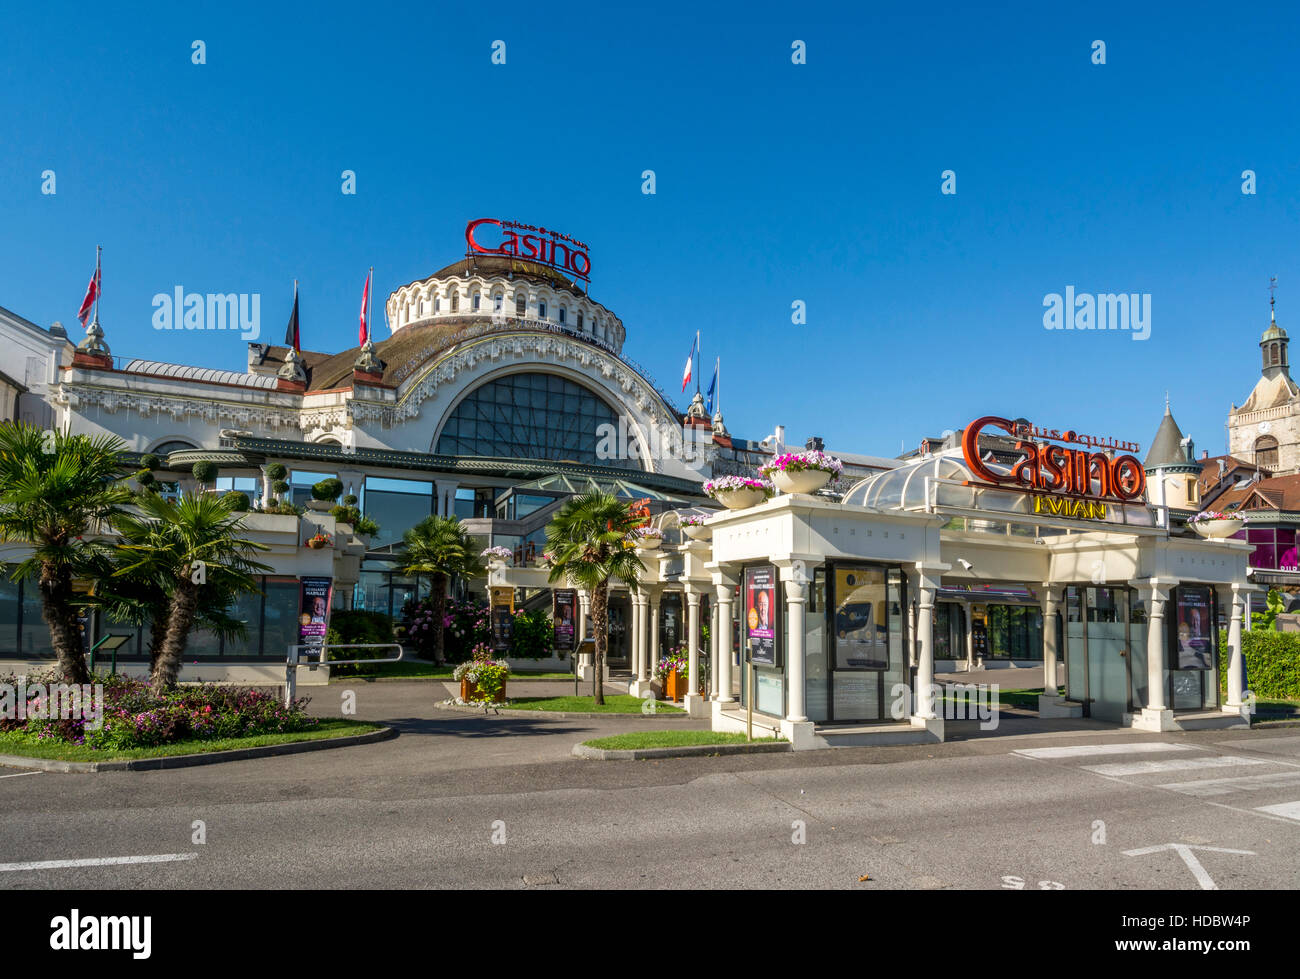 Casino, Evian-les-Bains, Haute-Savoie, France Banque D'Images